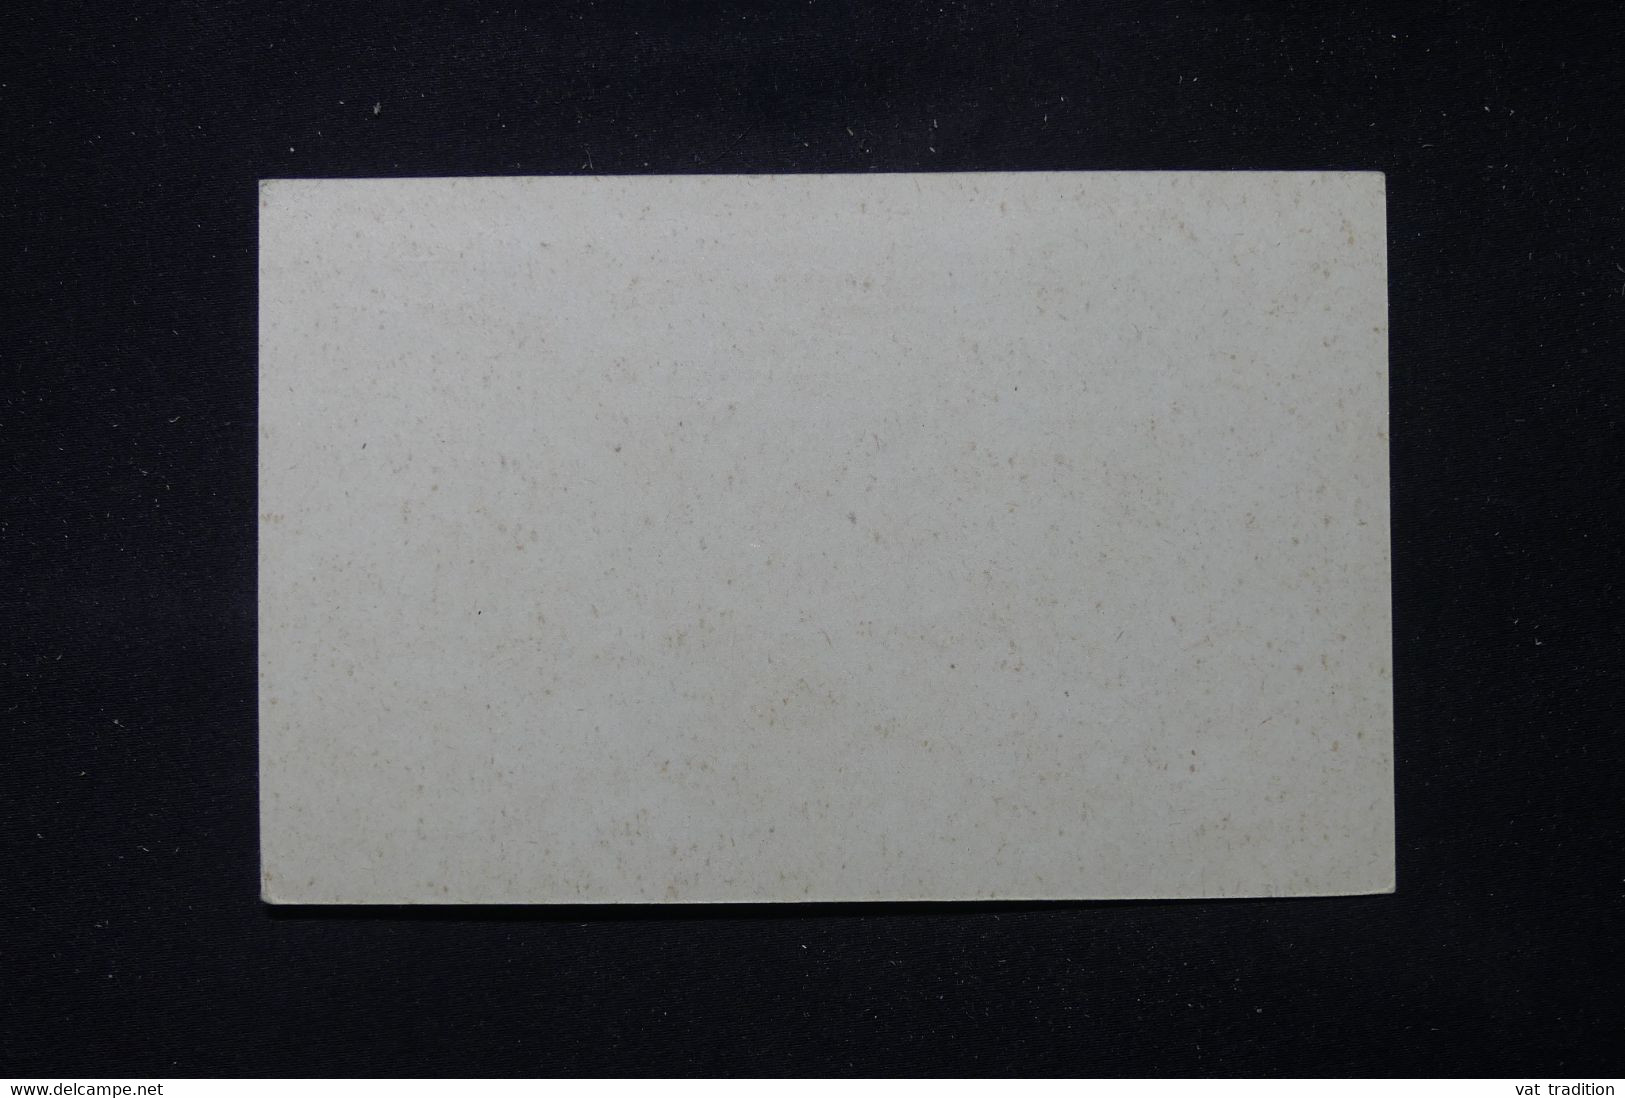 CHINE - Entier Postal ( Carte ) Type Sage Surchargé, Non Circulé - L 86419 - Covers & Documents